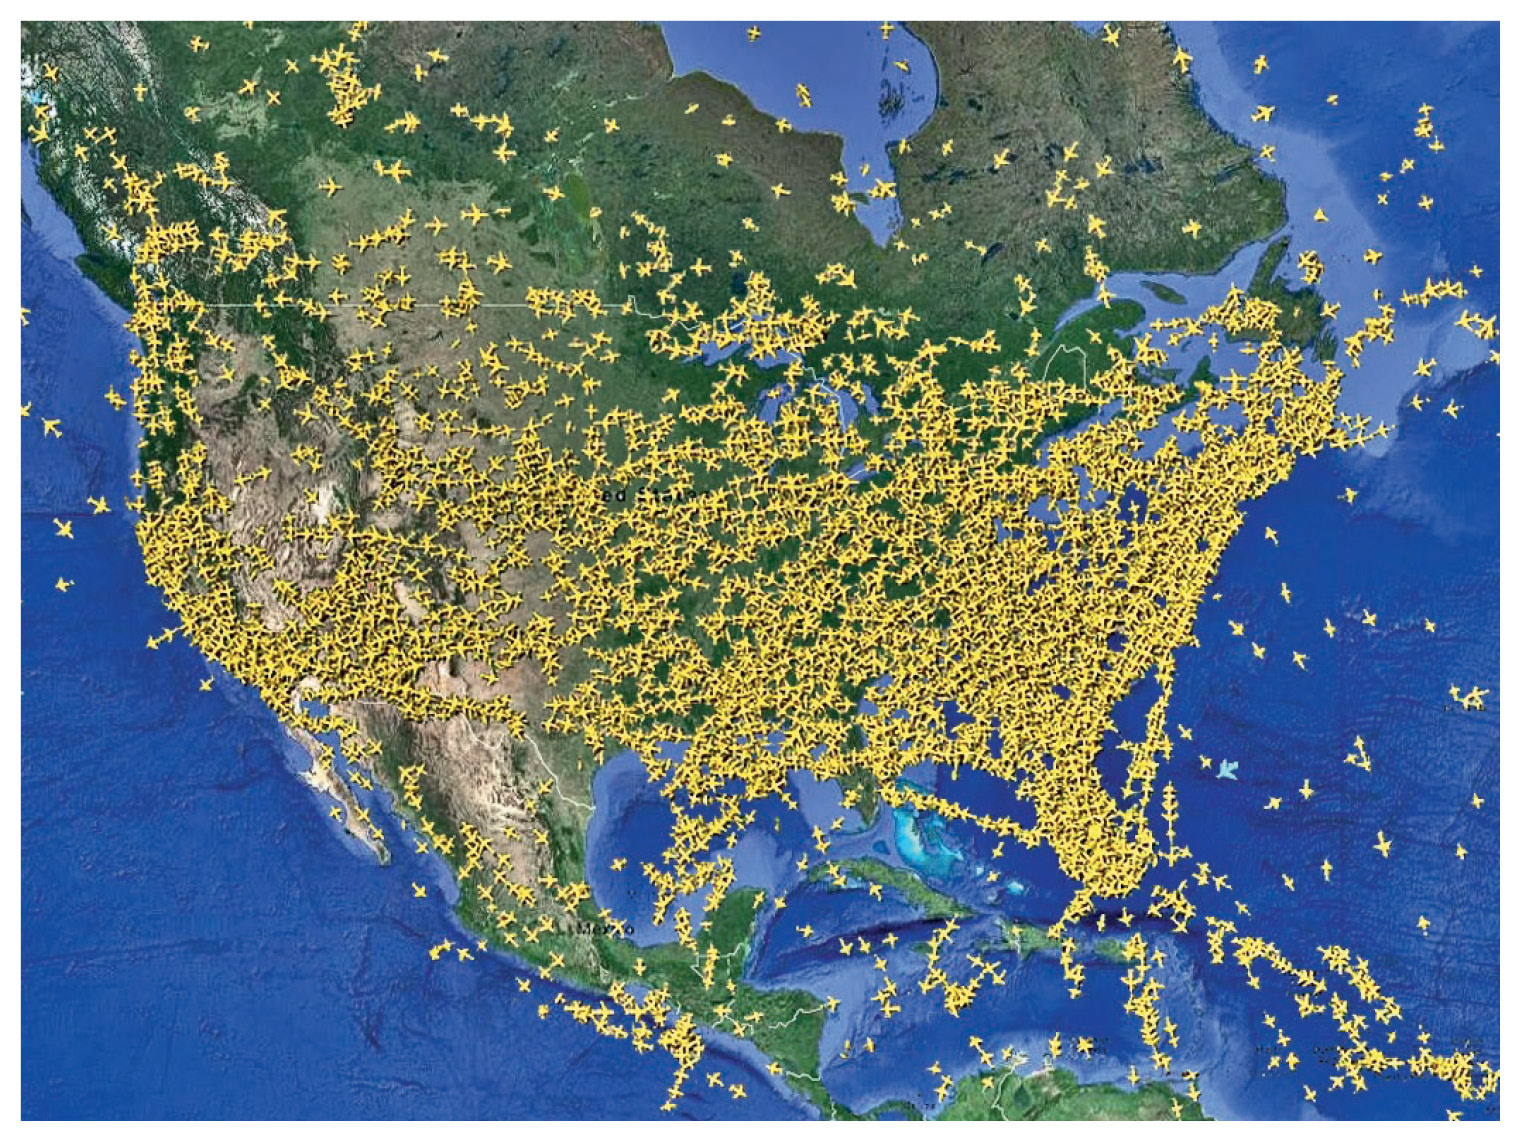 आसमान में जाम: सबसे संक्रमित देश अमेरिका में हर घंटे उड़ान भर रहे 7 हजार विमान